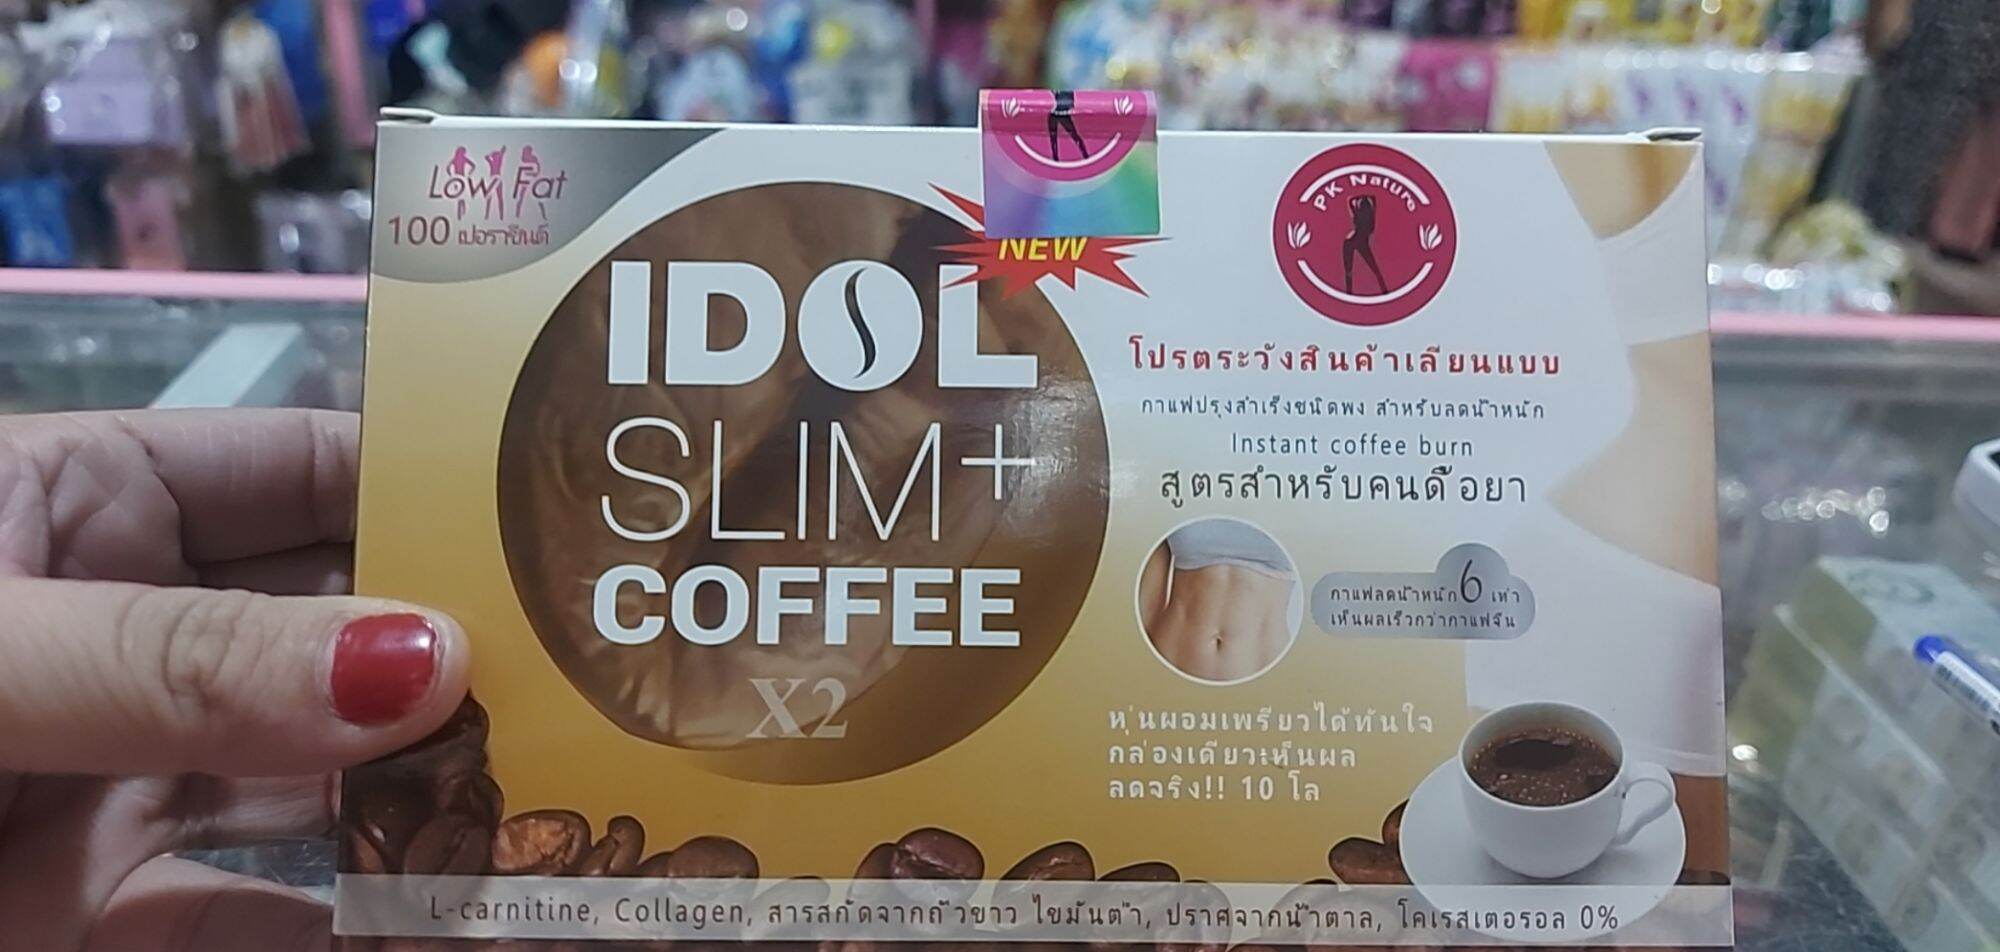 Hop 10 gói cafe IDol slim plus mạnh chính hãng